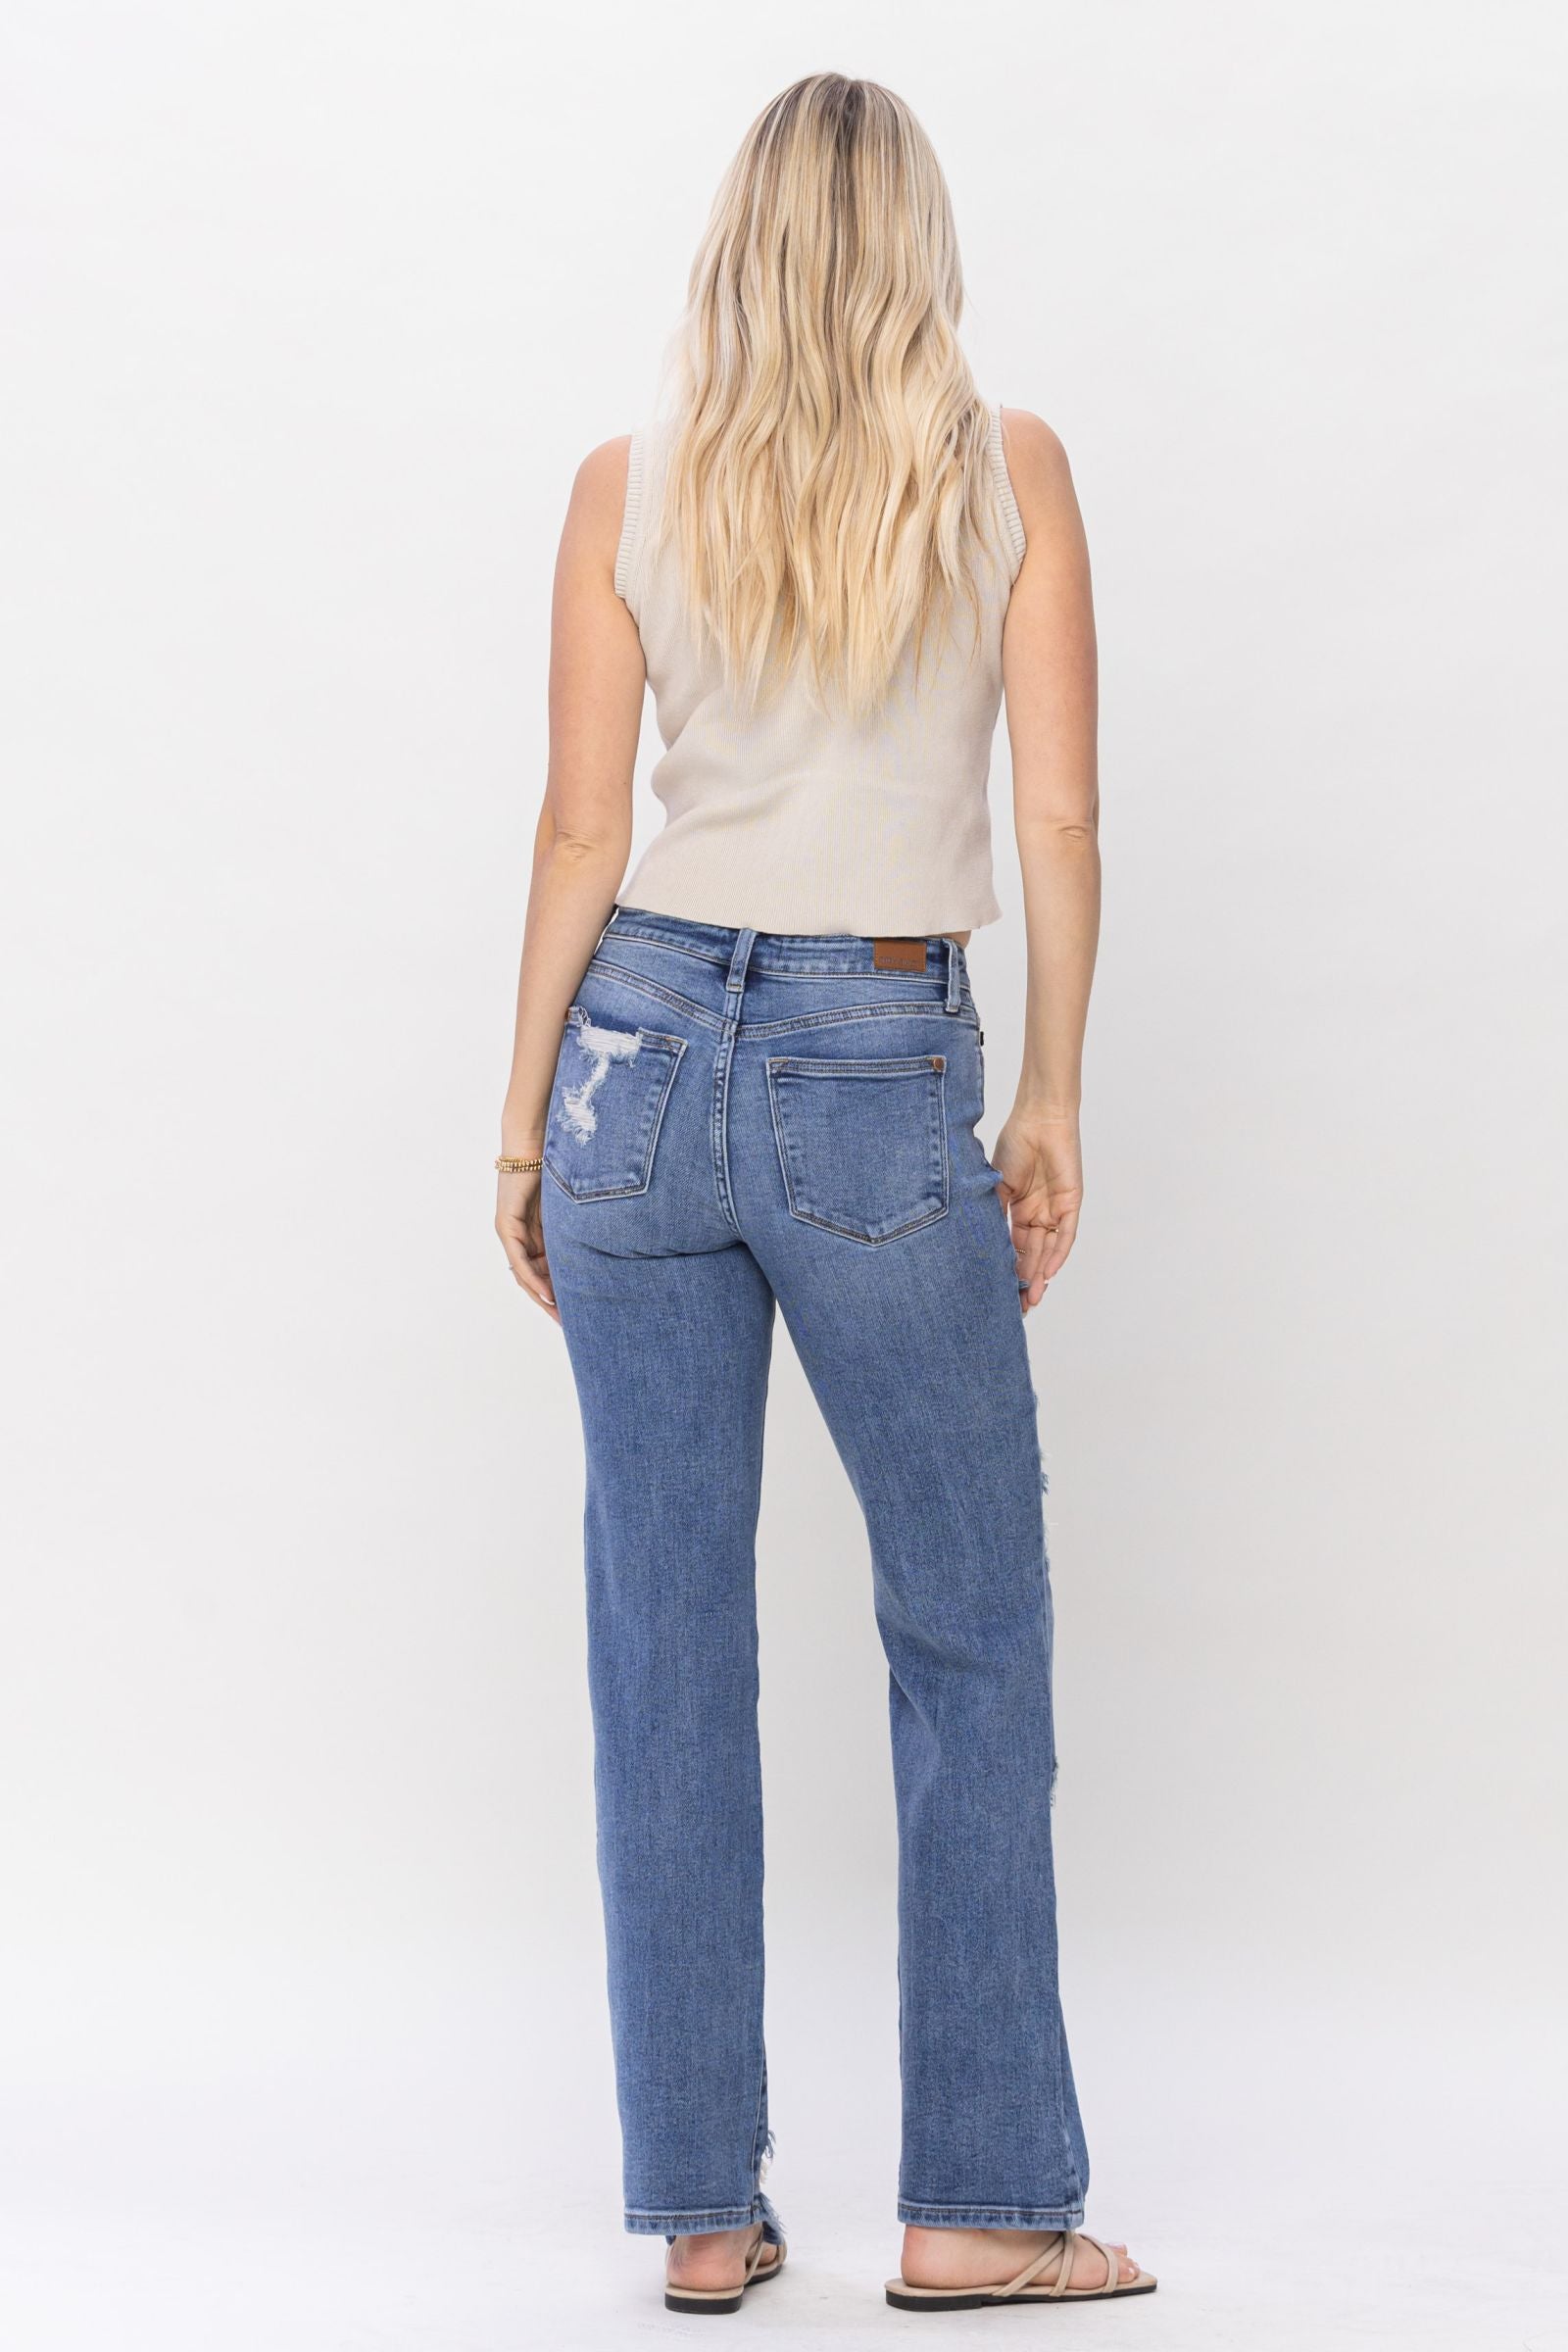 Judy Blue® PENELOPE Jeans